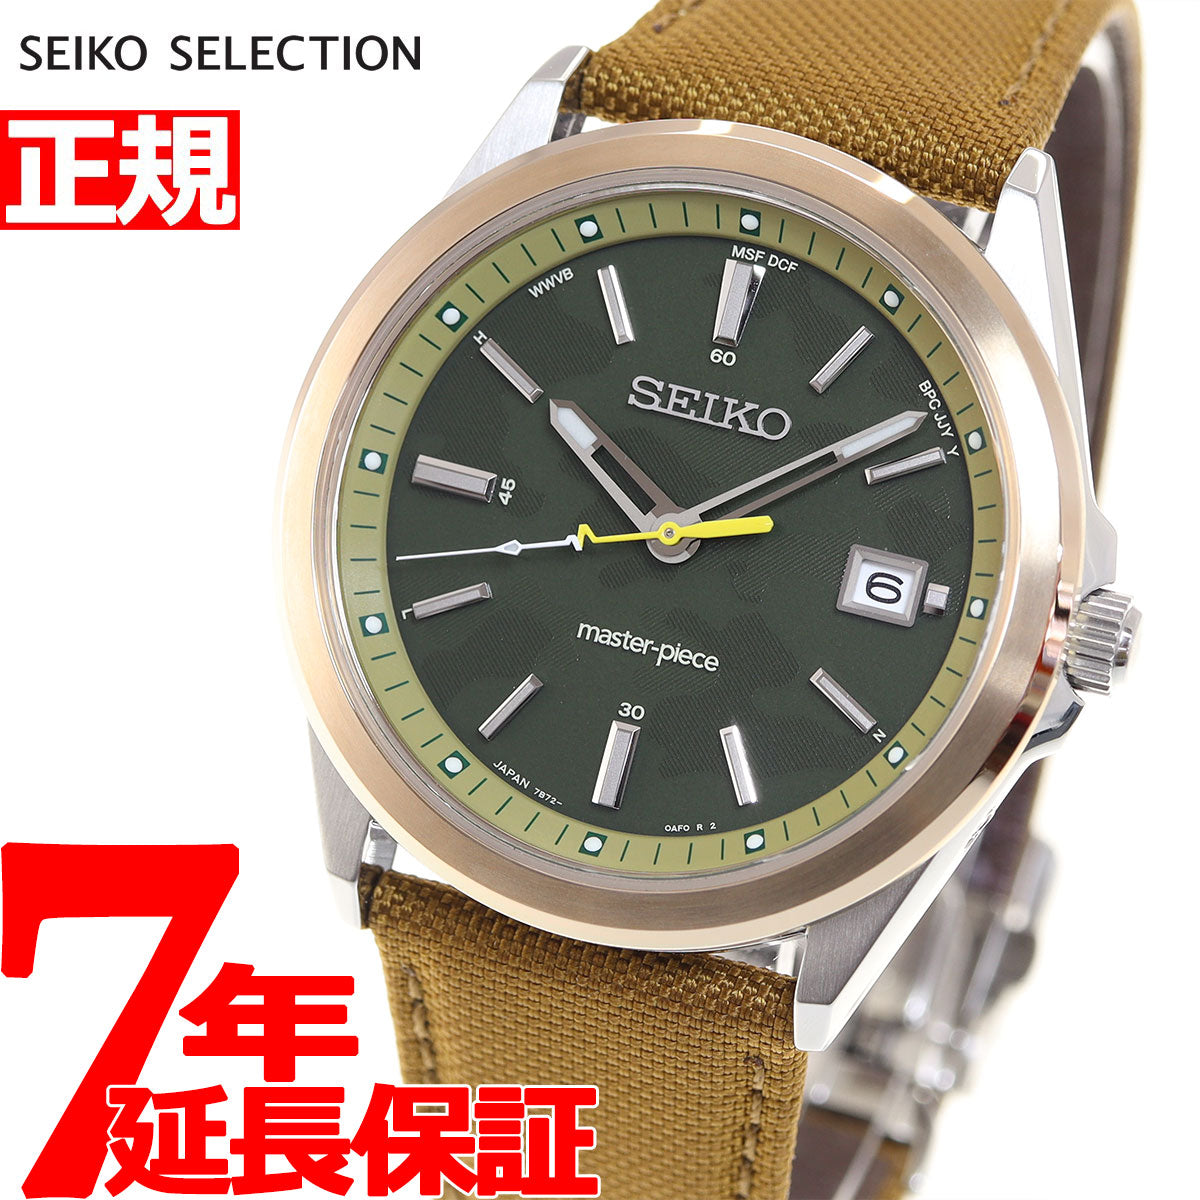 【新品】セイコー SEIKO 腕時計 メンズ SBTM314 セイコーセレクションマスターピース 流通限定モデル master-piece Limited Edition 電波ソーラー（7B72） カーキxブラウン アナログ表示